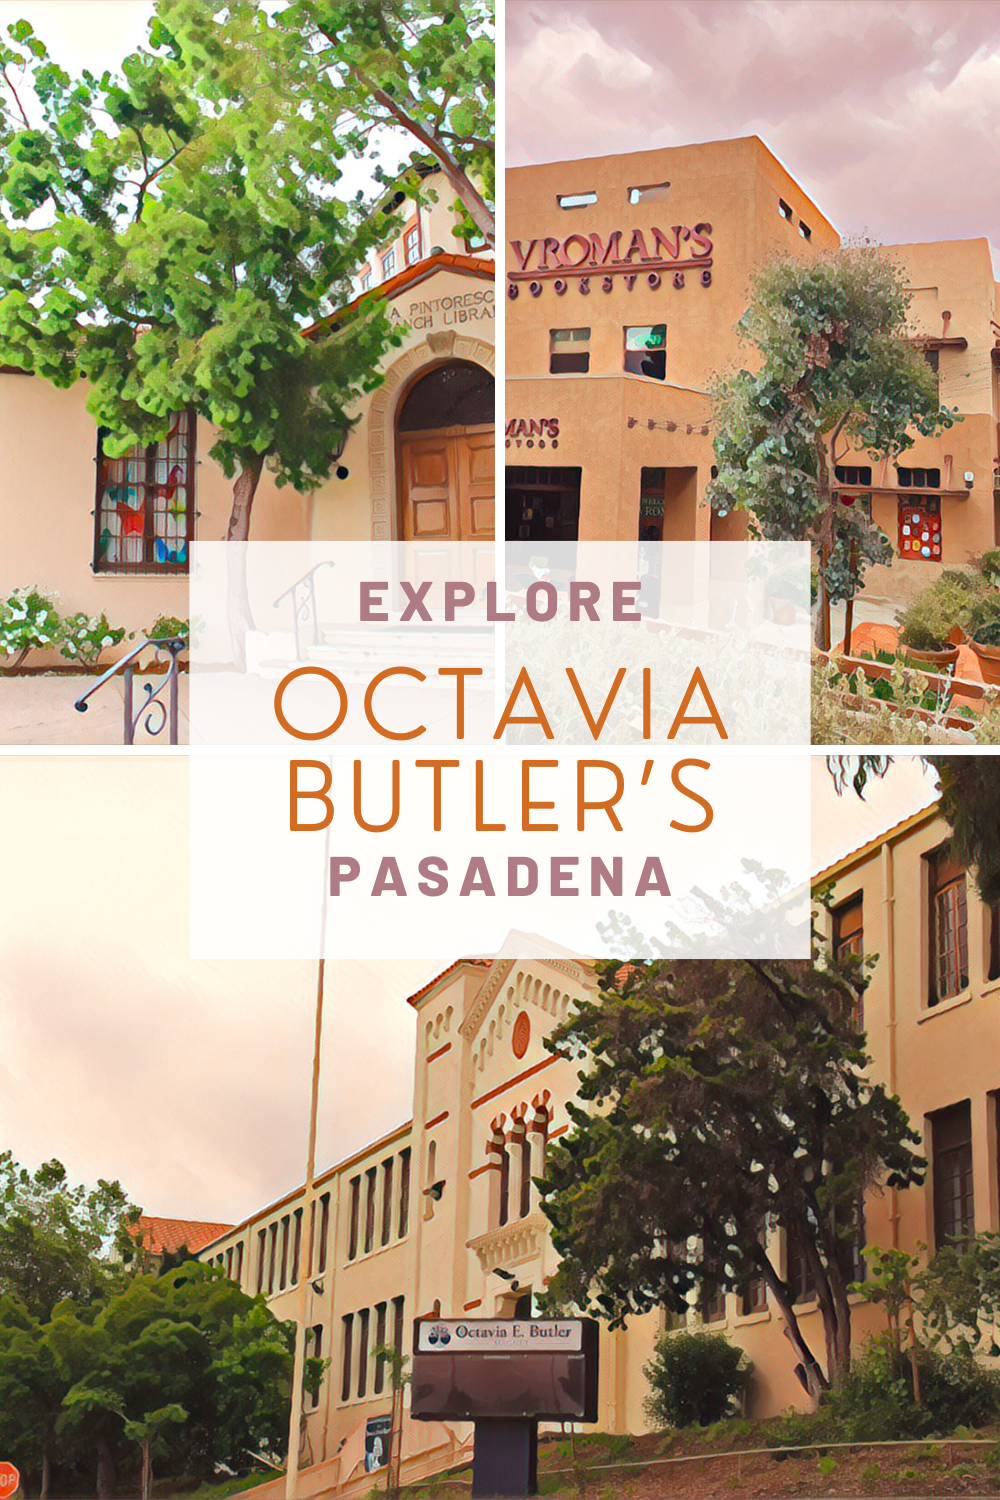 Explore Octavia Butler's Pasadena